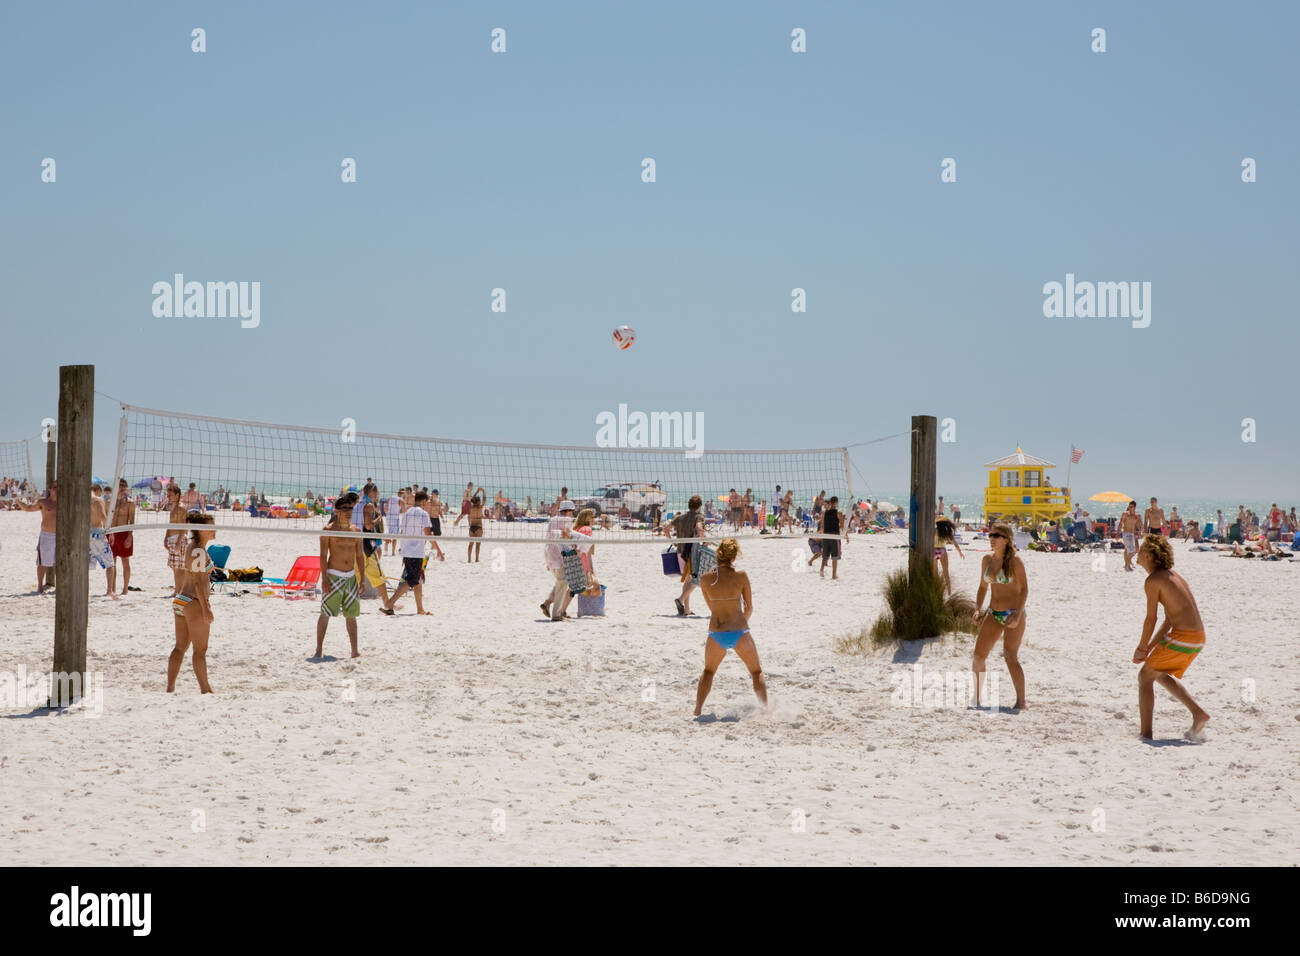 Partita di pallavolo sulla spiaggia durante le vacanze di primavera tempo su Siesta Key spiaggia pubblica sulla costa del Golfo della Florida Foto Stock